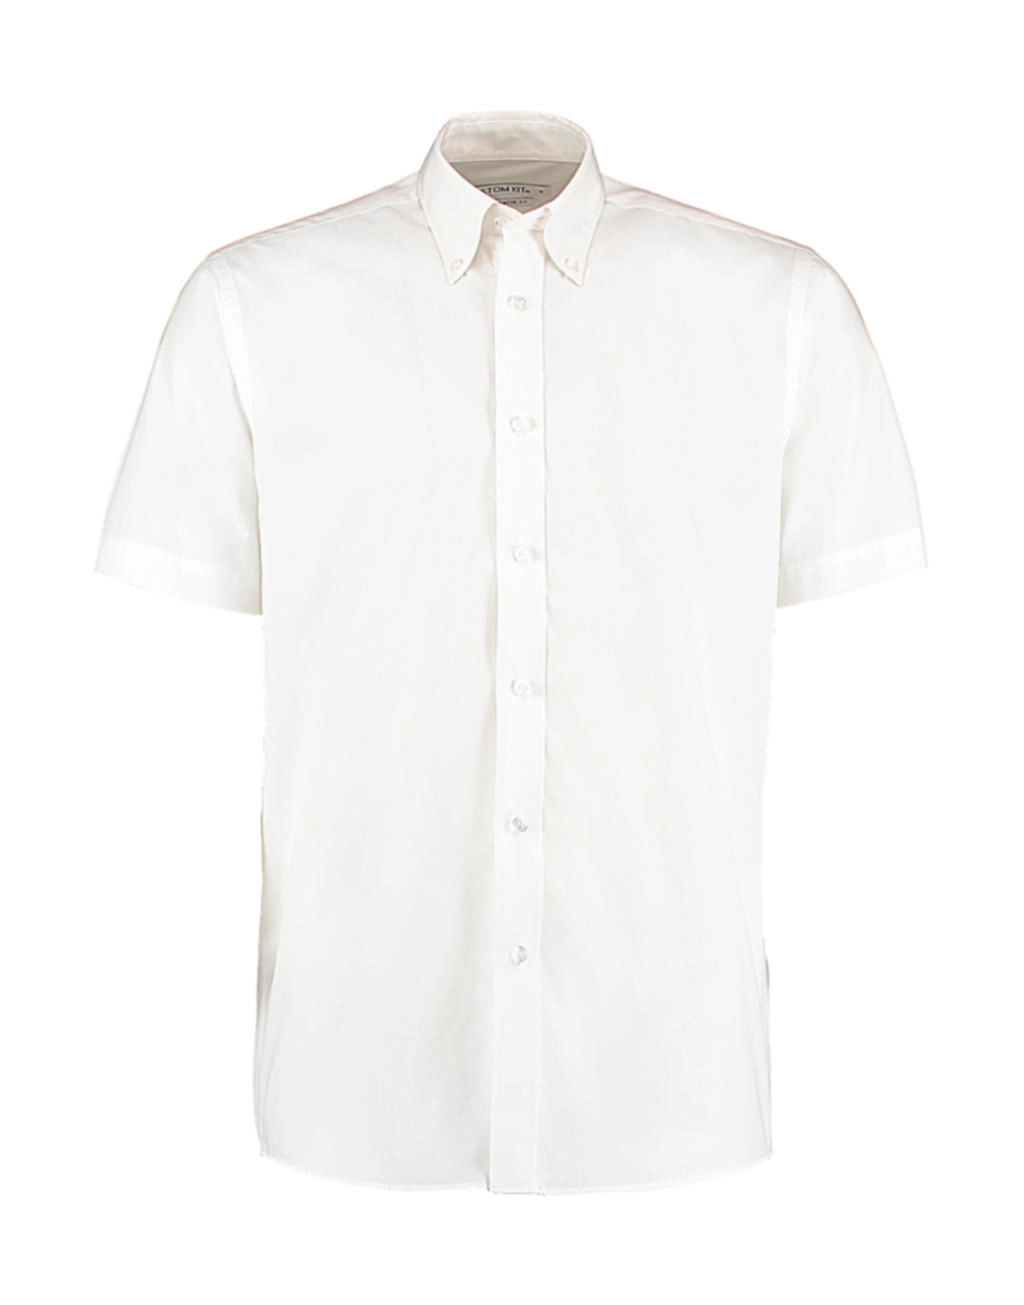 Classic Fit Workforce Shirt zum Besticken und Bedrucken in der Farbe White mit Ihren Logo, Schriftzug oder Motiv.